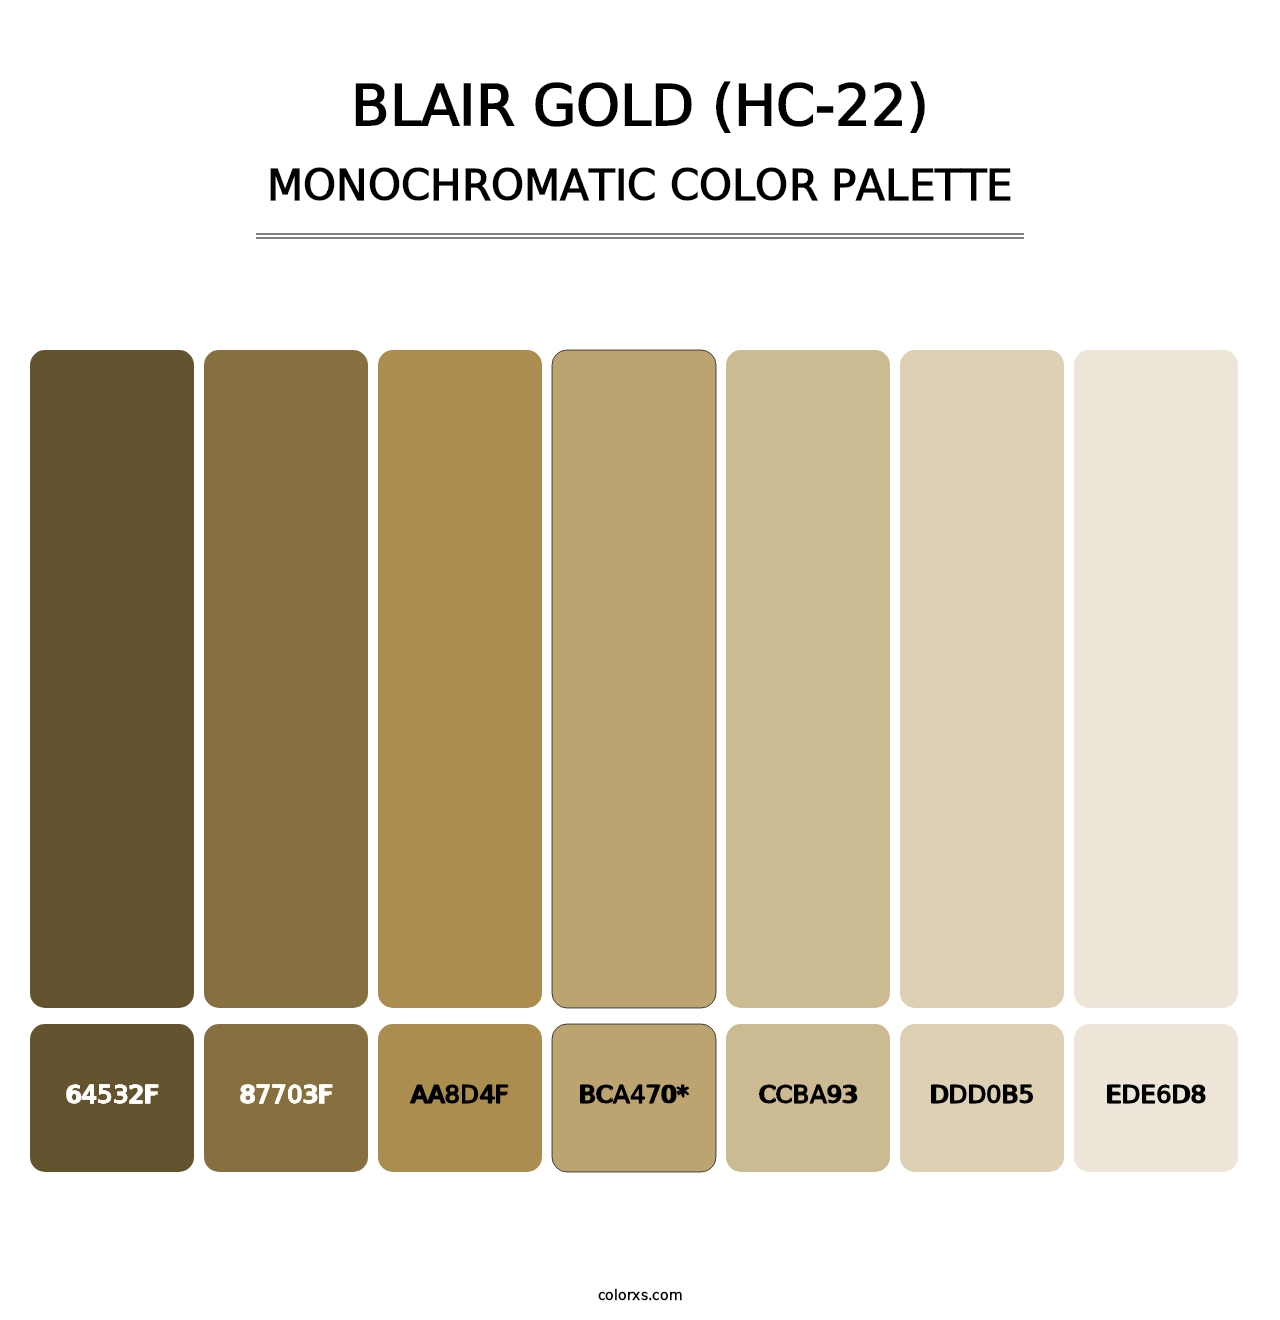 Blair Gold (HC-22) - Monochromatic Color Palette